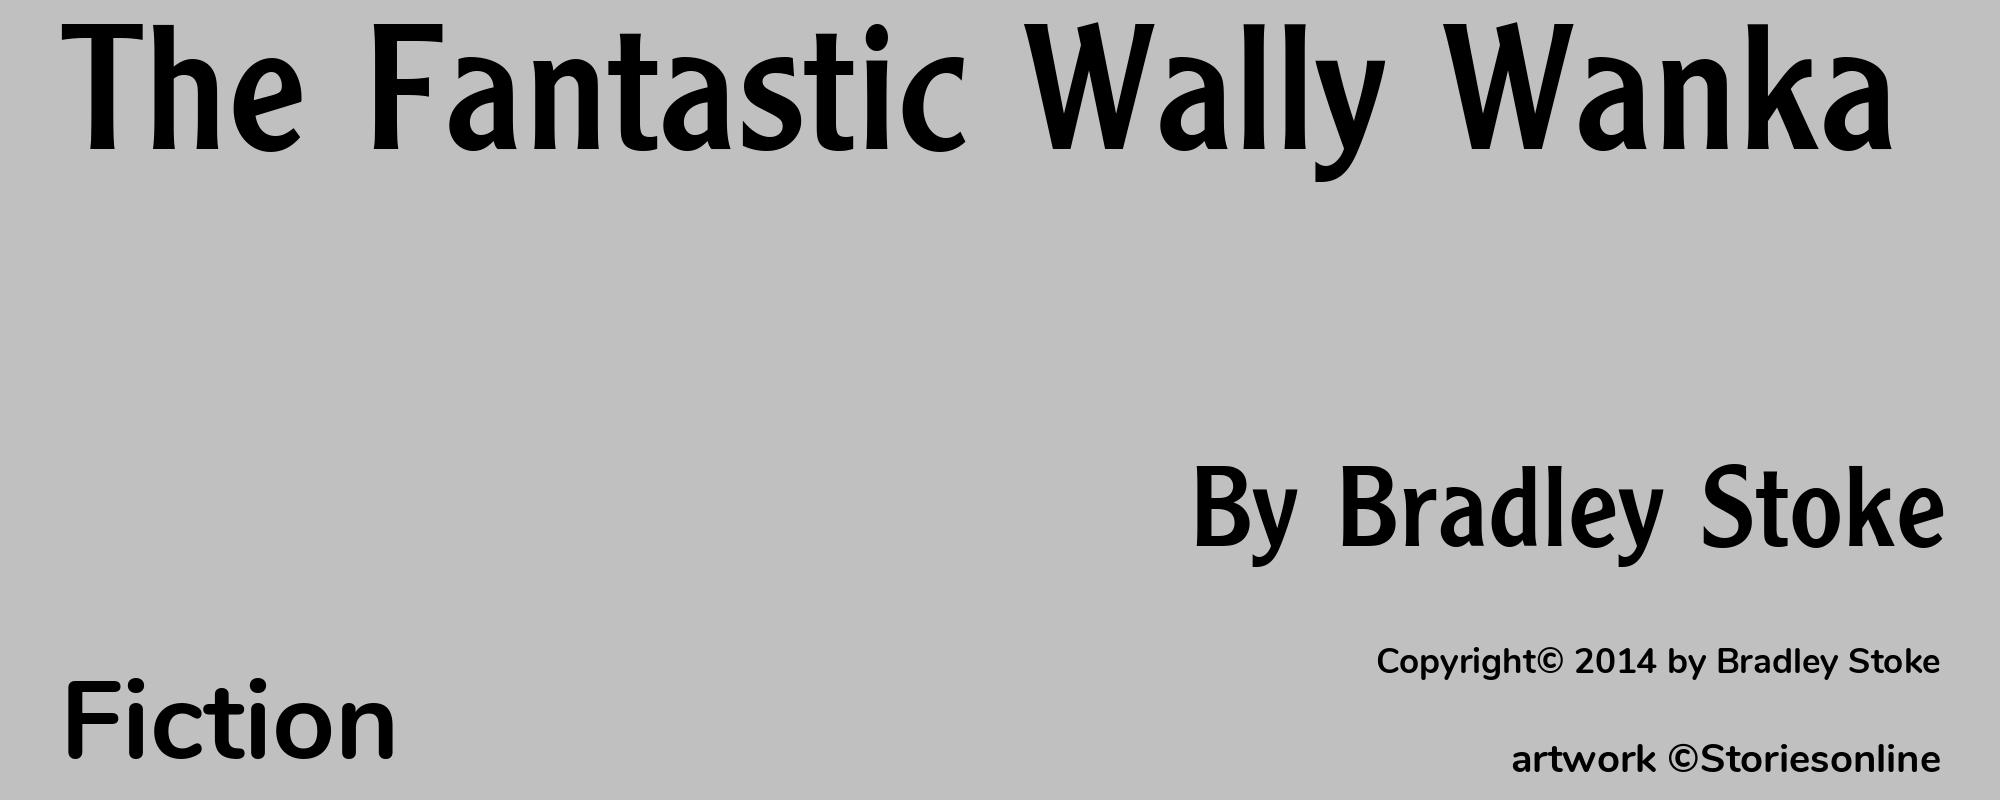 The Fantastic Wally Wanka - Cover